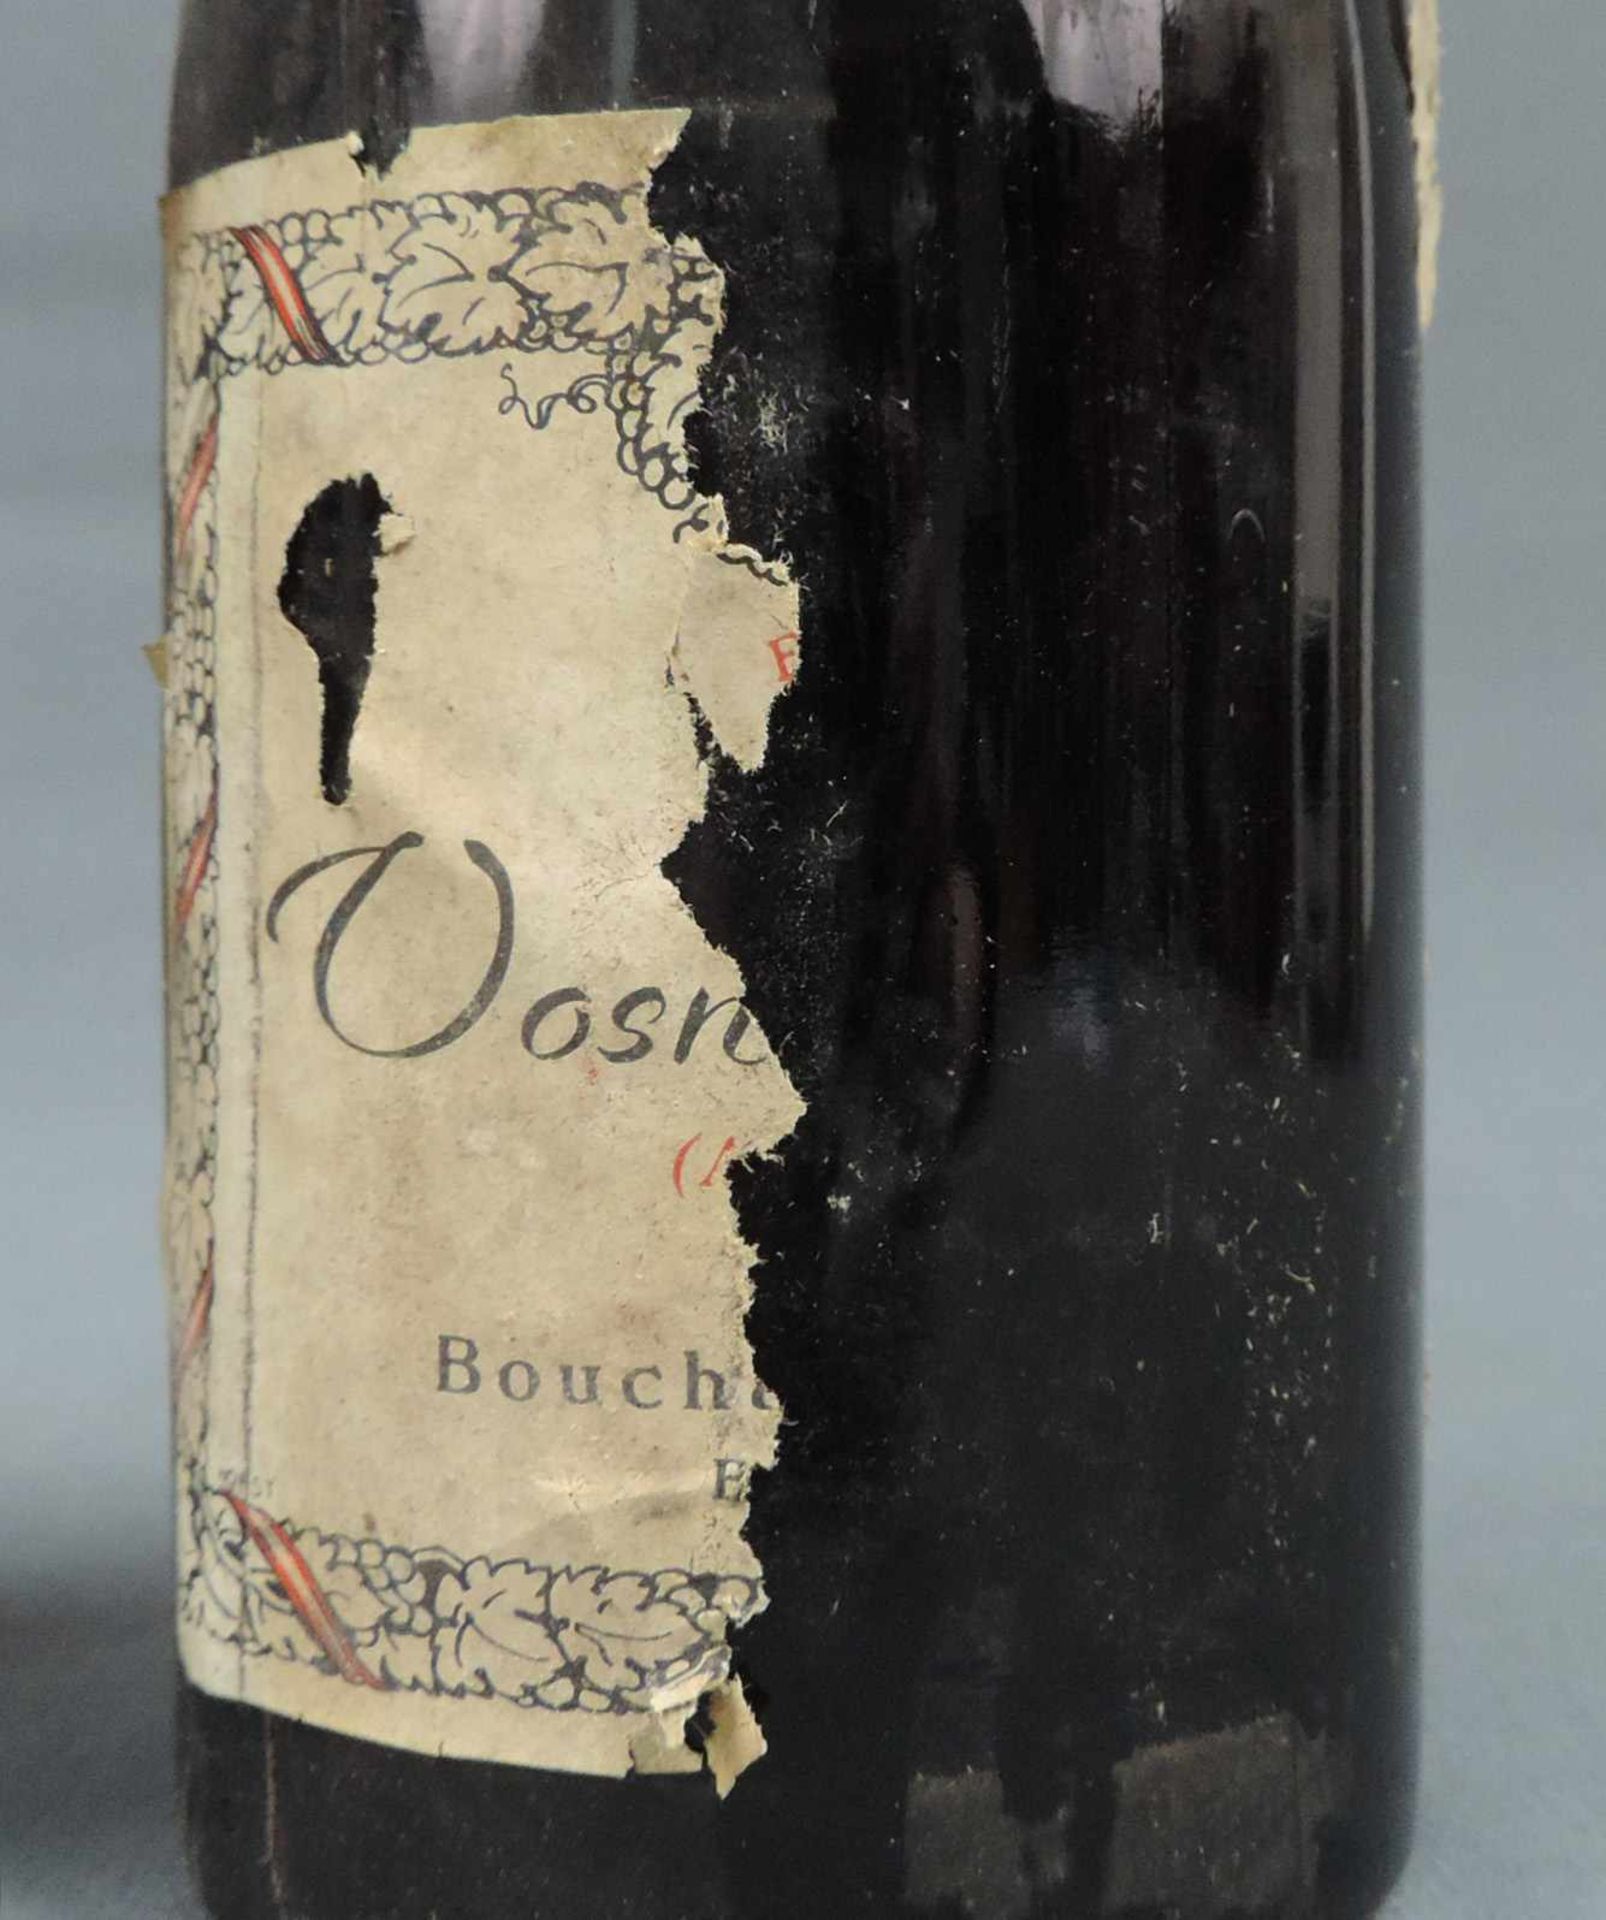 1937 Vosne Romanée AC Bouchard Ainé Fils. Beaune (Cote d'Or). 3 ganze Flaschen. Rotwein. Frankreich. - Image 4 of 6